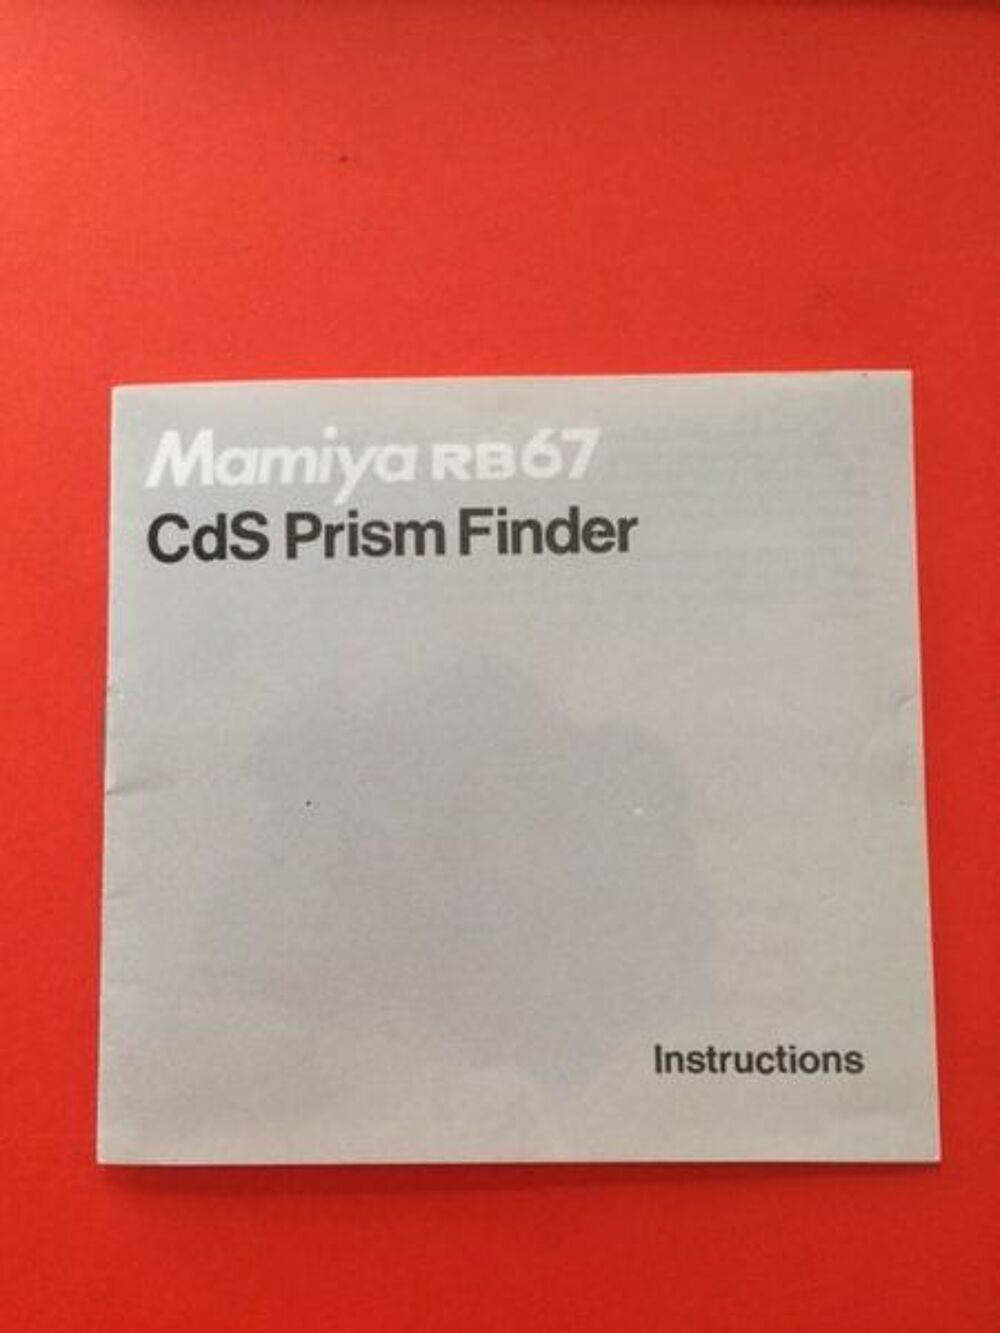 Mamiya RB 67 - Notice CDS Prism Finder Photos/Video/TV